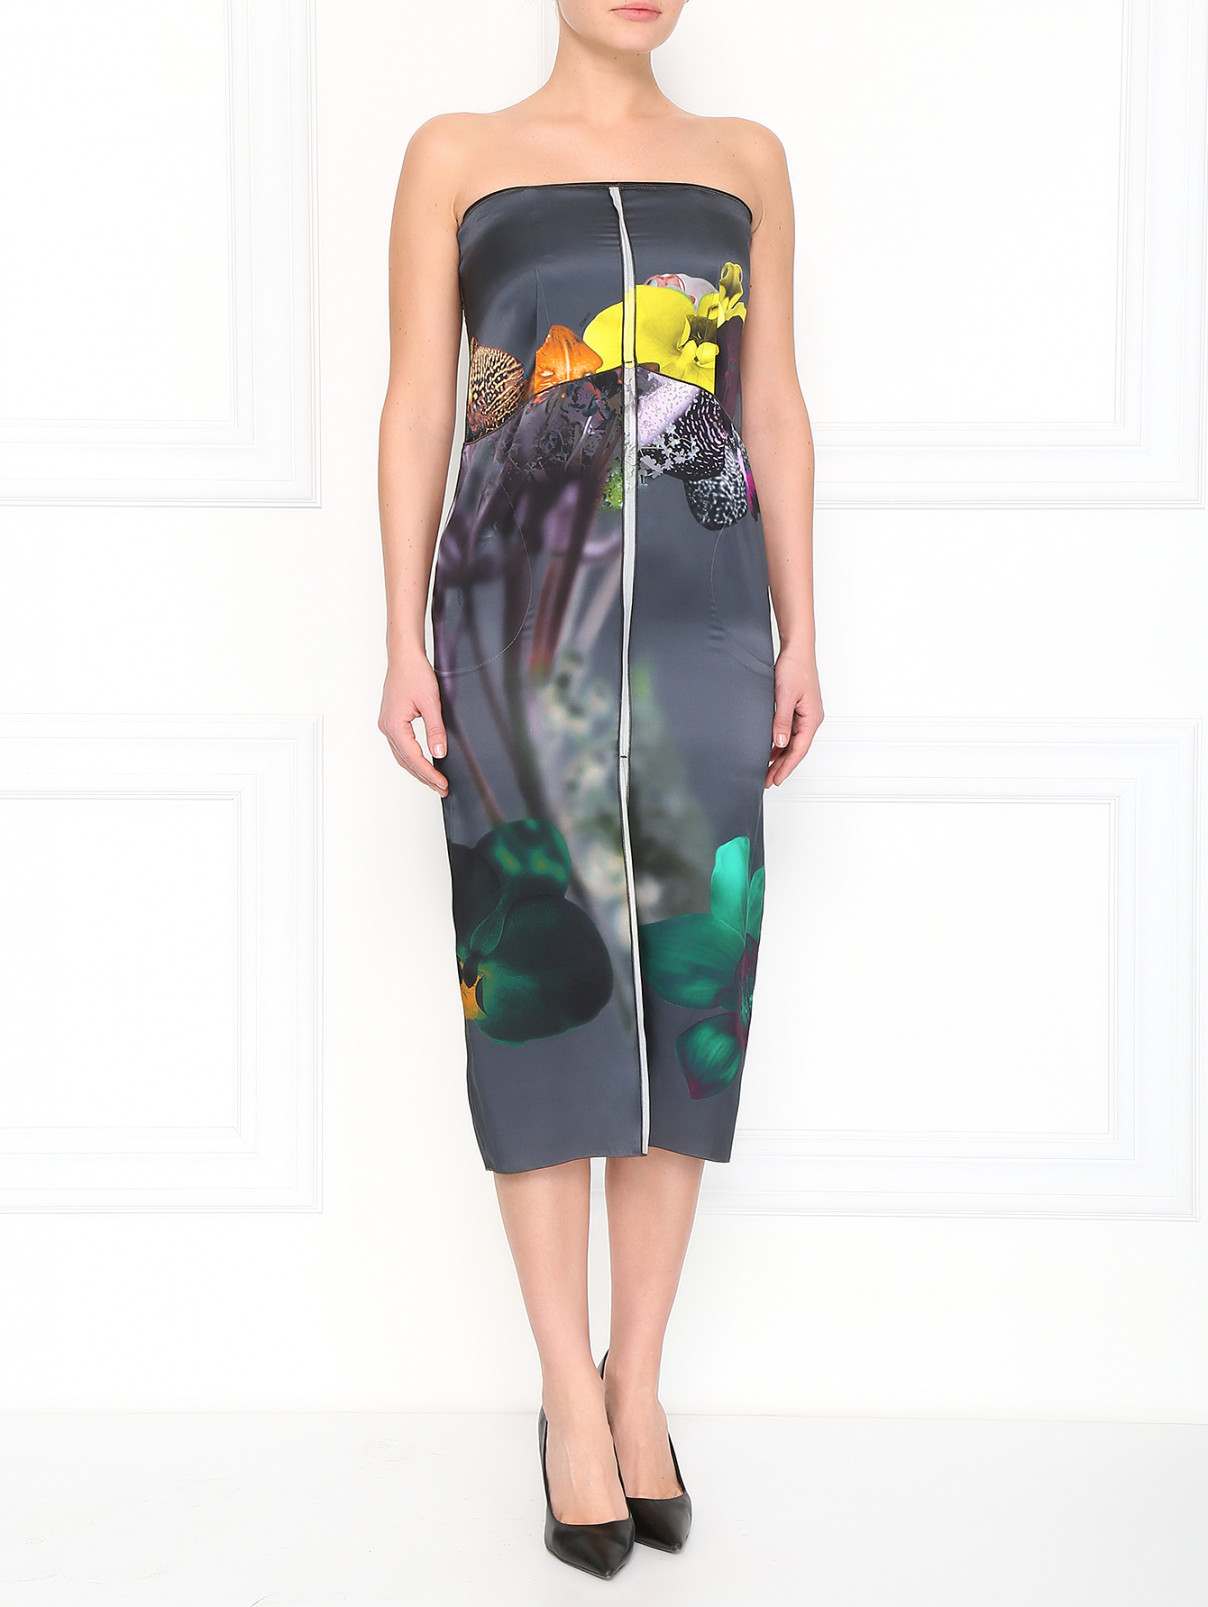 Шелковое платье с принтом Iceberg  –  Модель Общий вид  – Цвет:  Серый